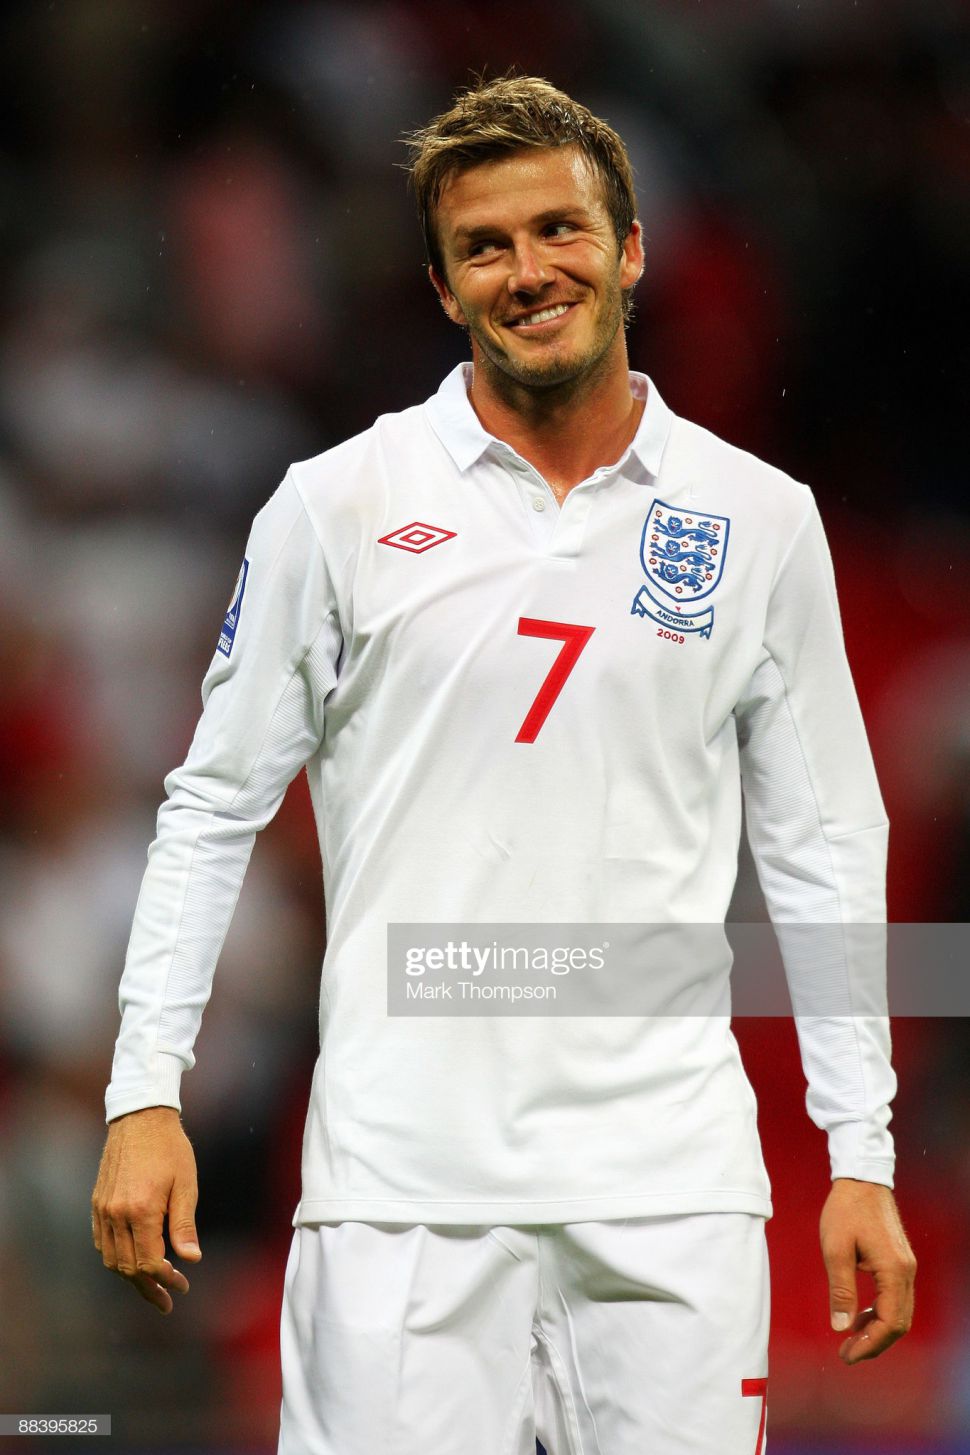 Áo đấu David Beckham 7 England 2009-2010 home shirt jersey white Umbro